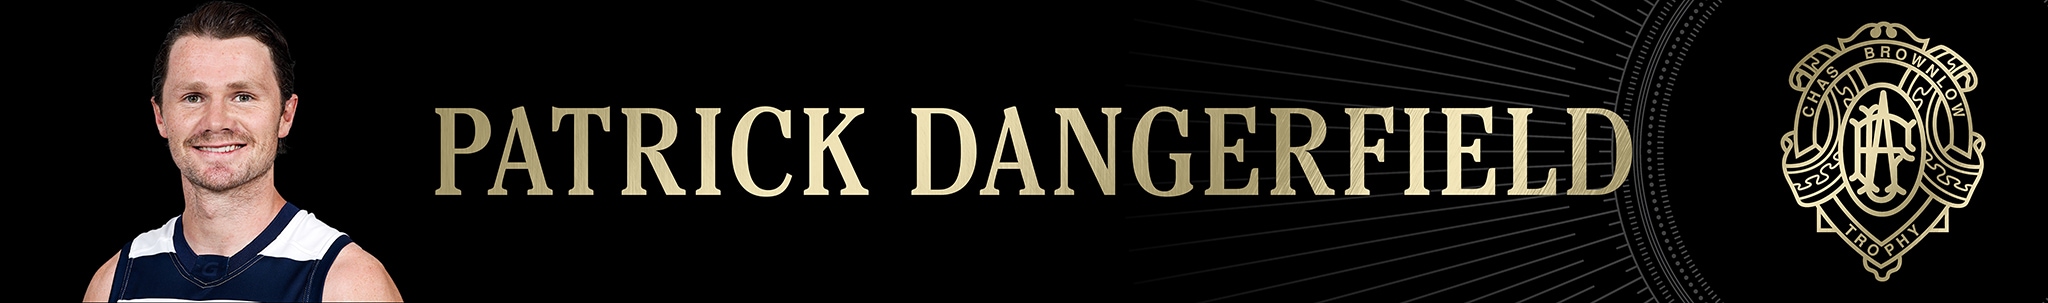 Danger banner